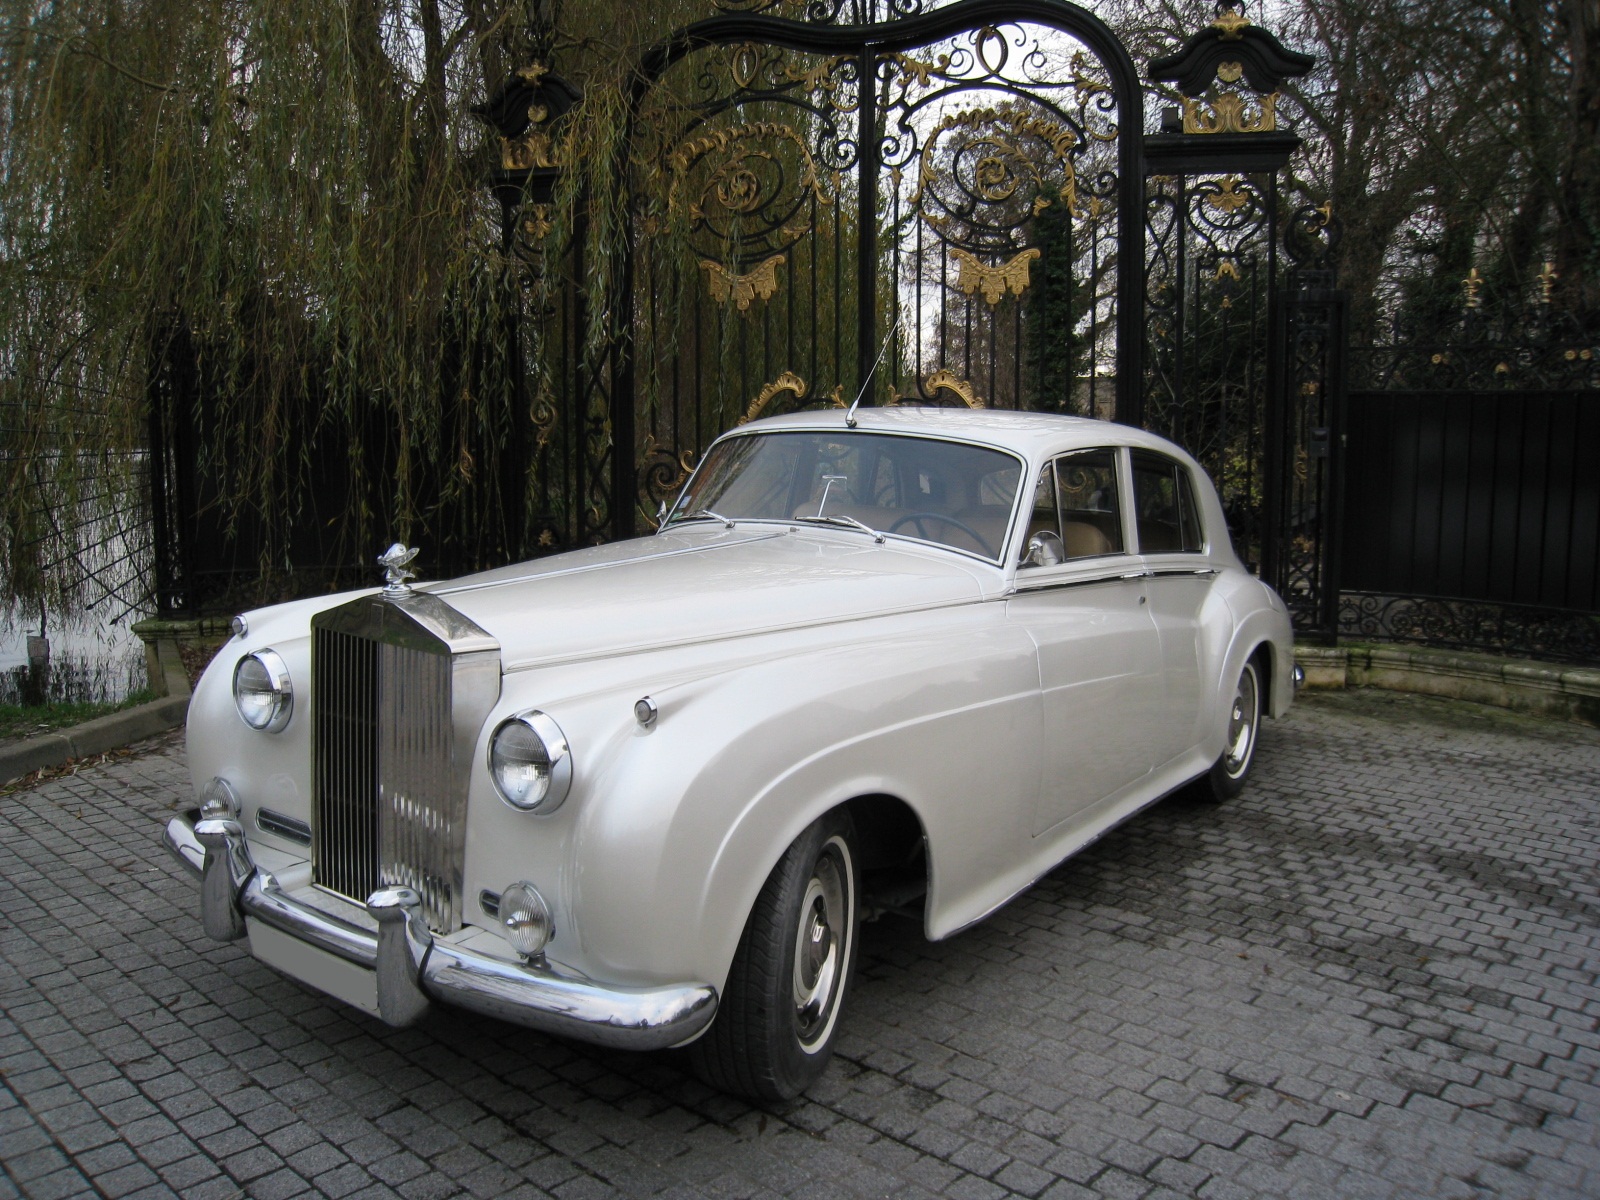 Rolls Royce Silver Cloud blanc nacré de 1960